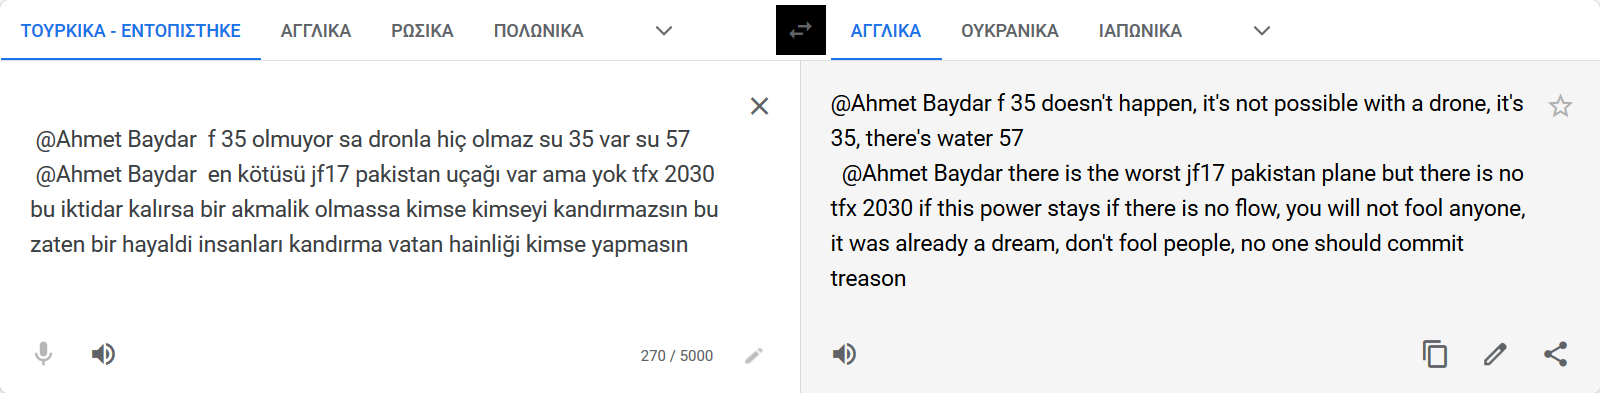 Screenshot_2021-07-22 Μετάφραση Google(2).png